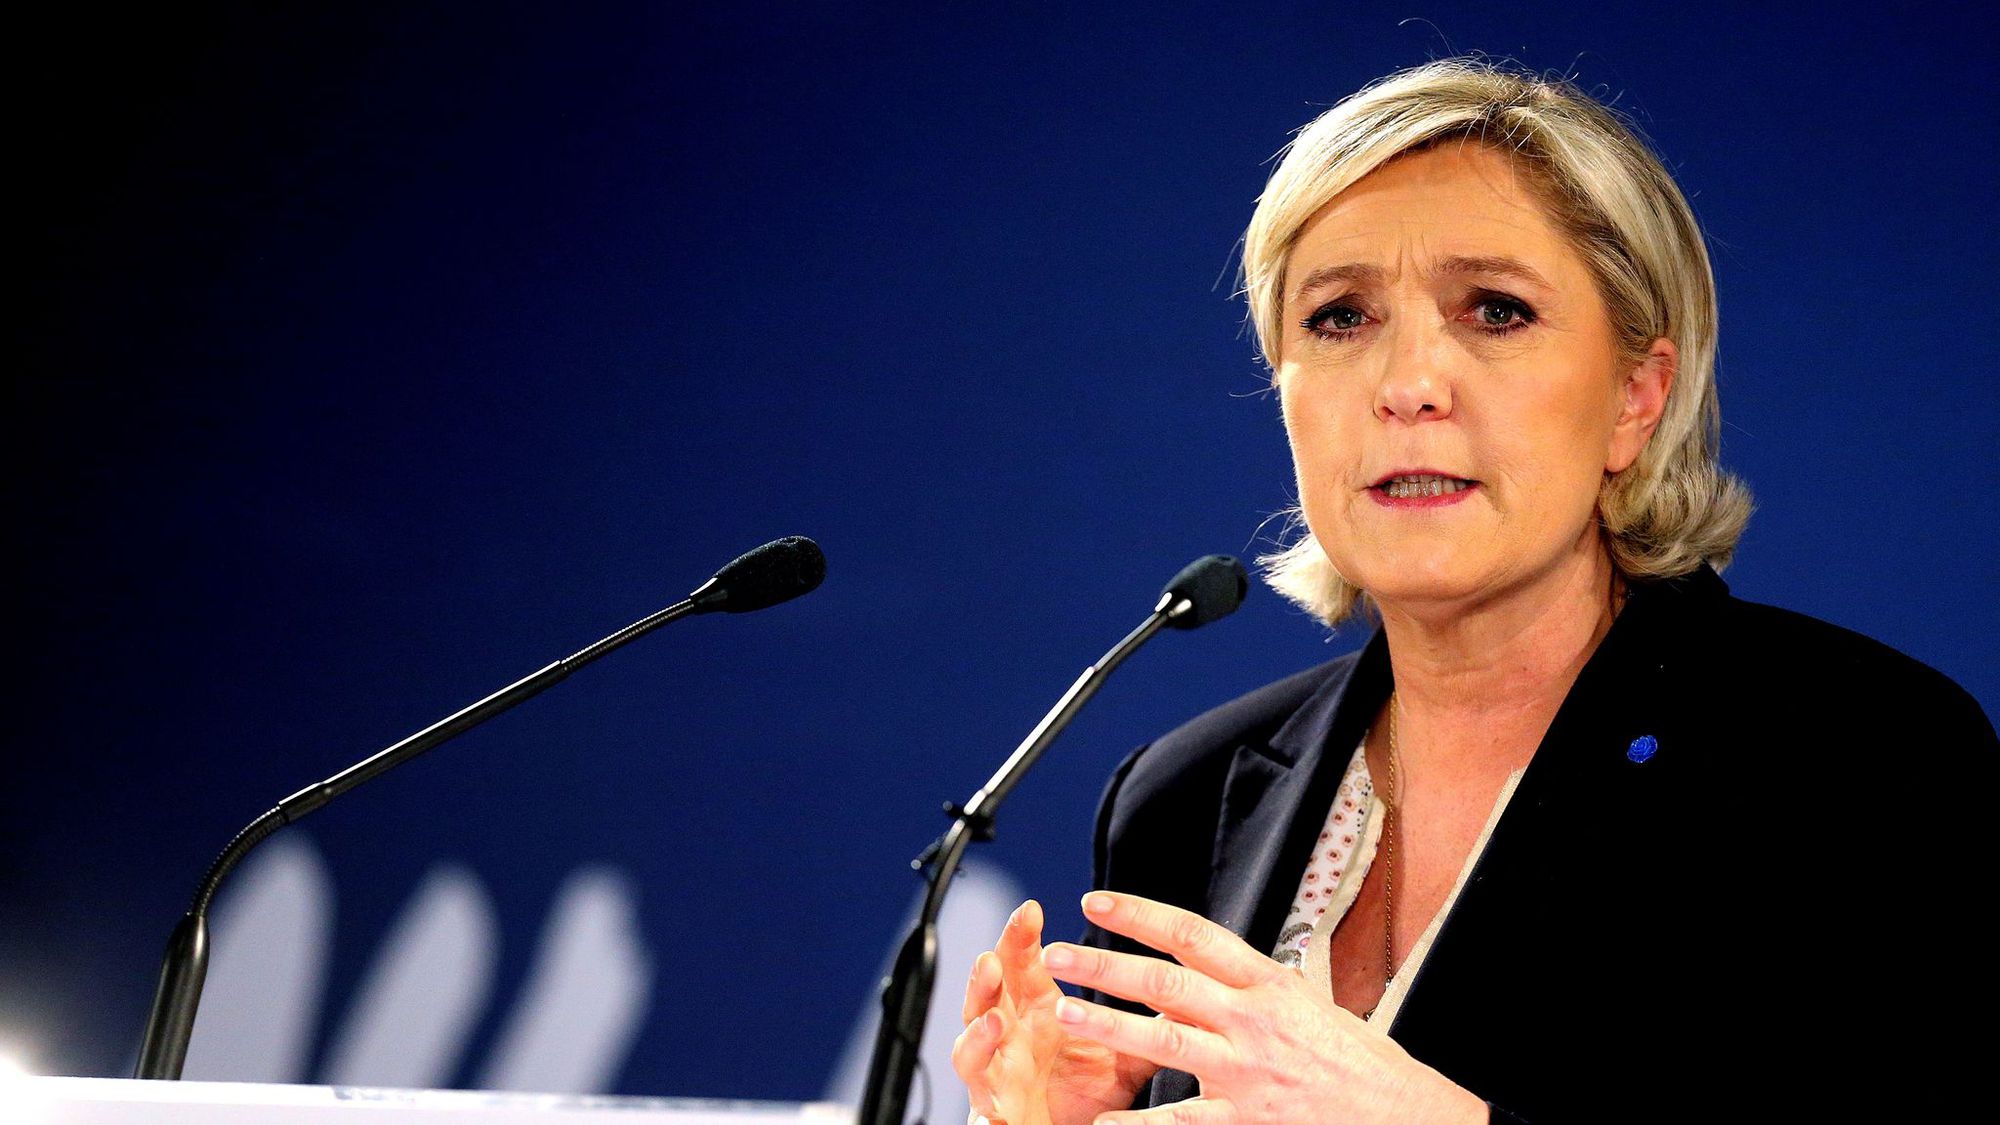 Paris - Le QG de campagne de Marine Le Pen visé par une tentative d'incendie, la piste criminelle privilégiée - L'Express